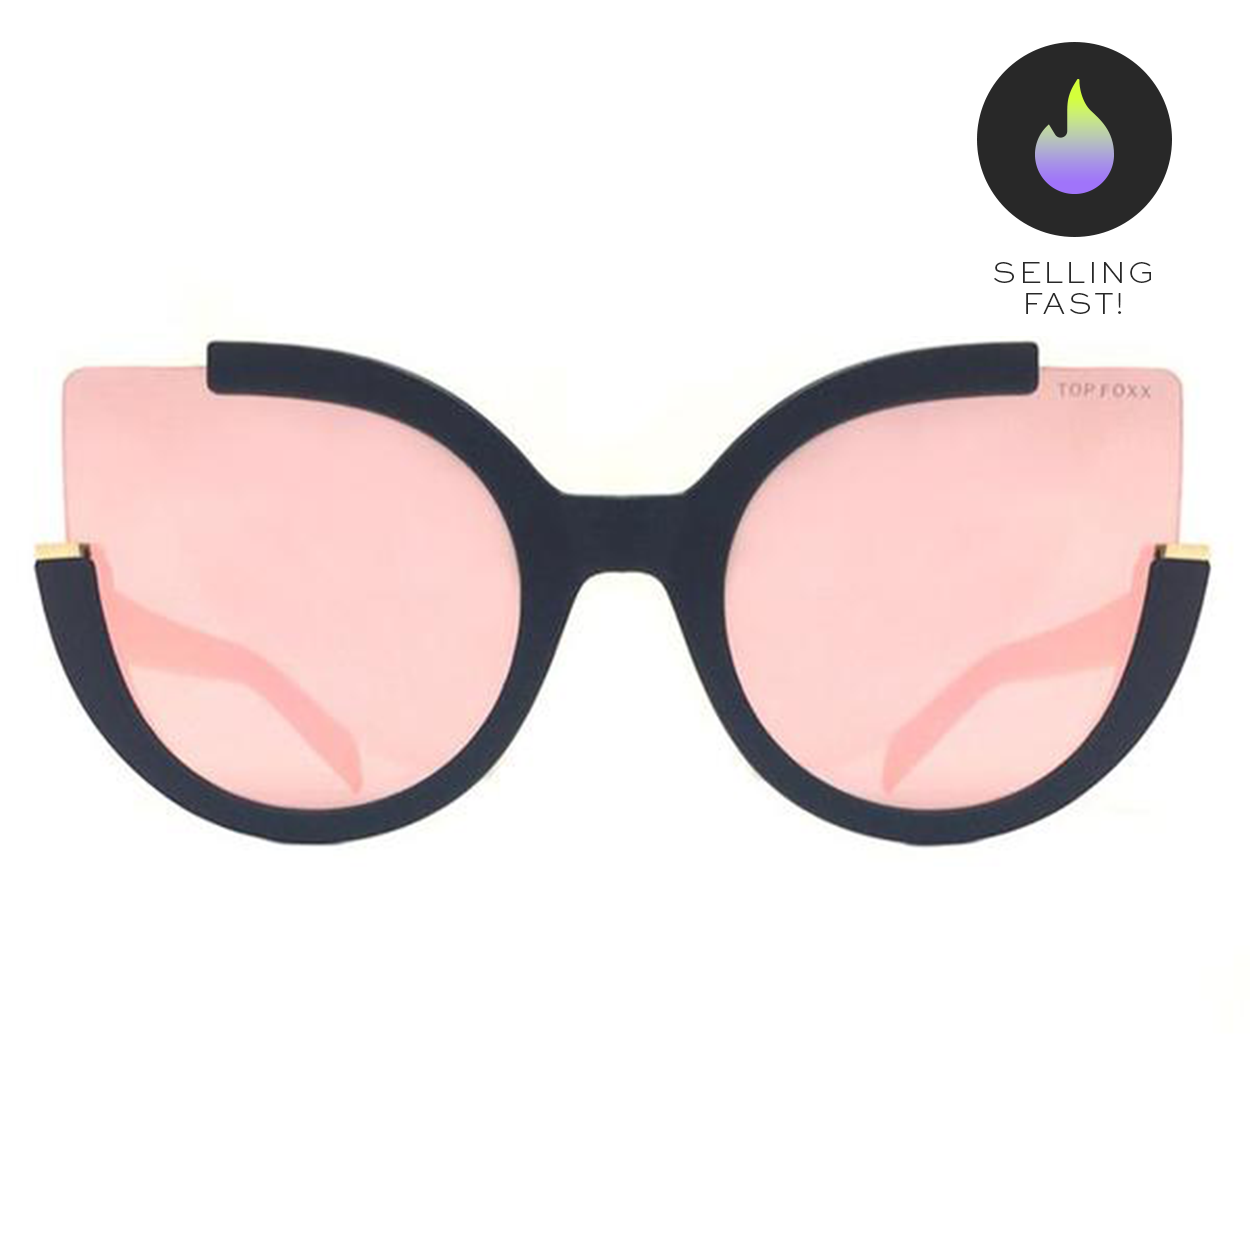 Fendi Women's Lettering Cat Eye Sunglasses